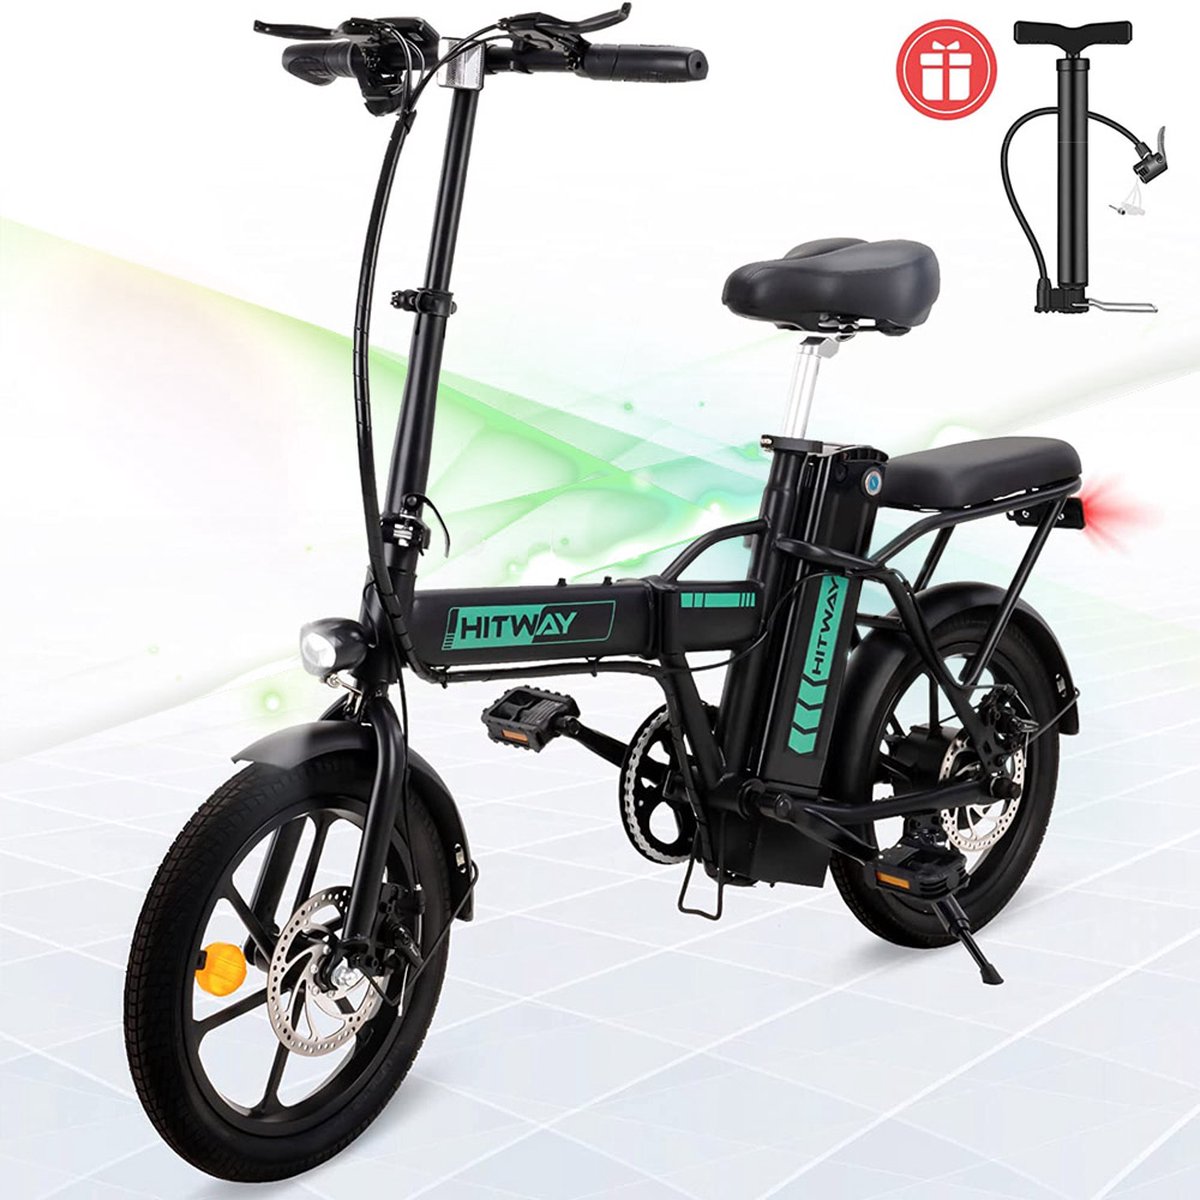 Hitway Elektrische fiets voor Stadsfietsen Opvouwbaar E-BIKE 7.5Ah Batterij 250W Motor Actieradius Tot 45 km BK5